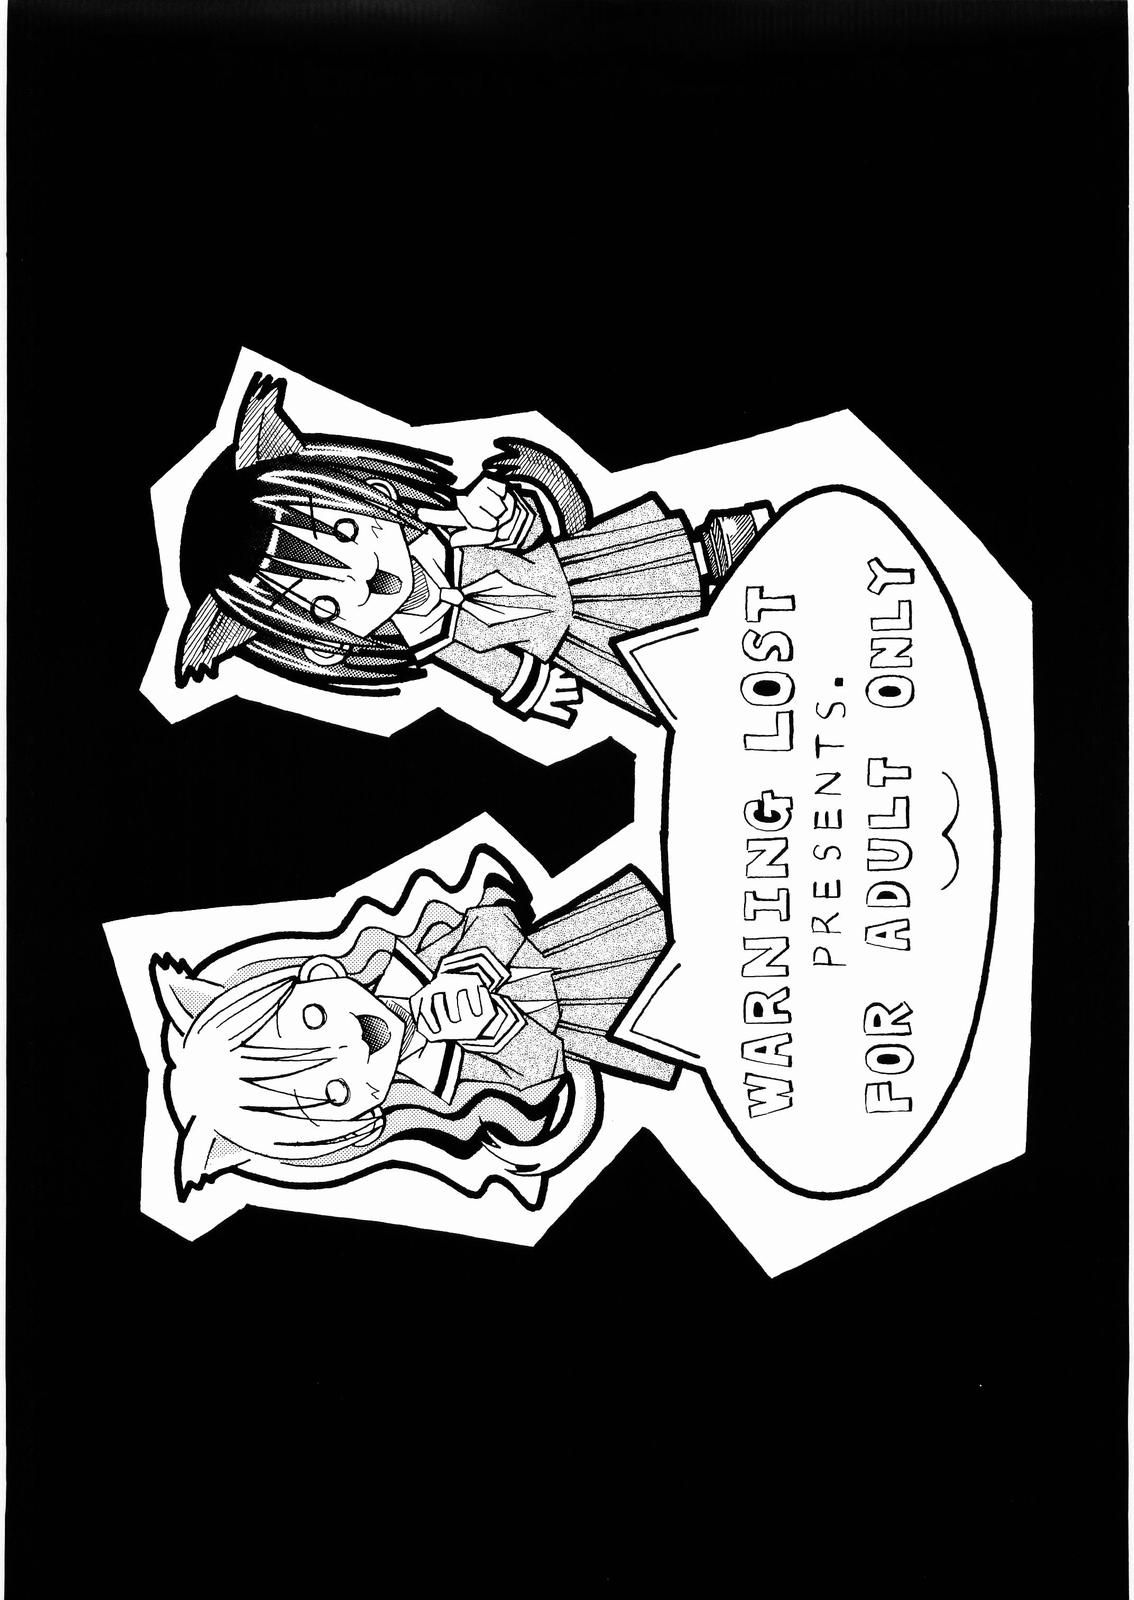 [WARNING LOST (Oomori Naoaki)] nyannyan de nyan x 2 (Maria-sama ga Miteru) [わーにんぐ・ろすと (大森なおあき)] にゃんにゃんでニャン&times;2 (マリア様がみてる)